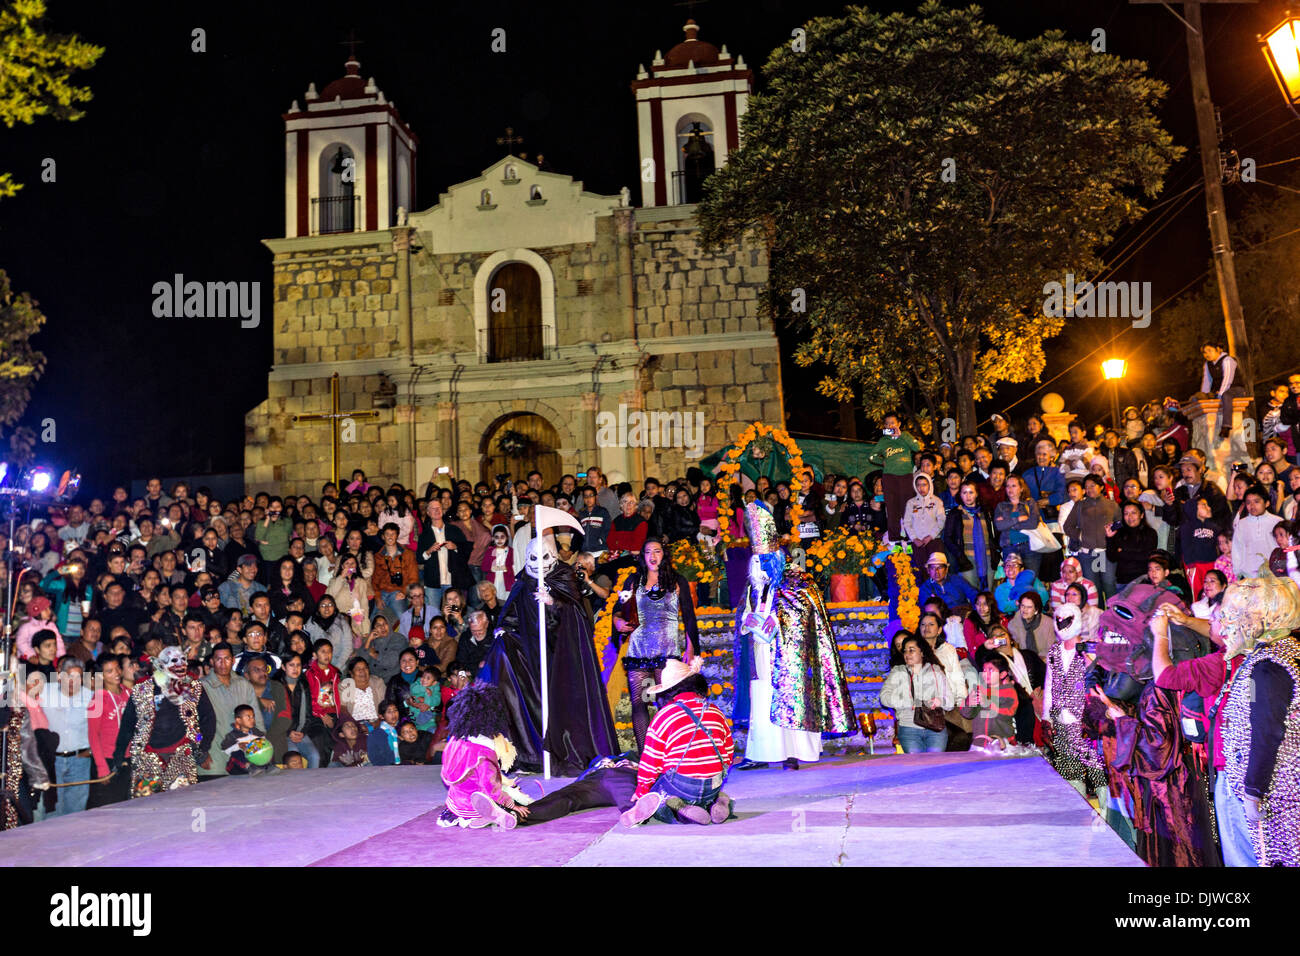 Centinaia di abitanti di un villaggio guarda una performance di attori in costume per celebrare il Giorno dei Morti Festival noto in spagnolo come Día de Muertos il 1 novembre 2013 a San Agustin Etla, Oaxaca, Messico. Foto Stock